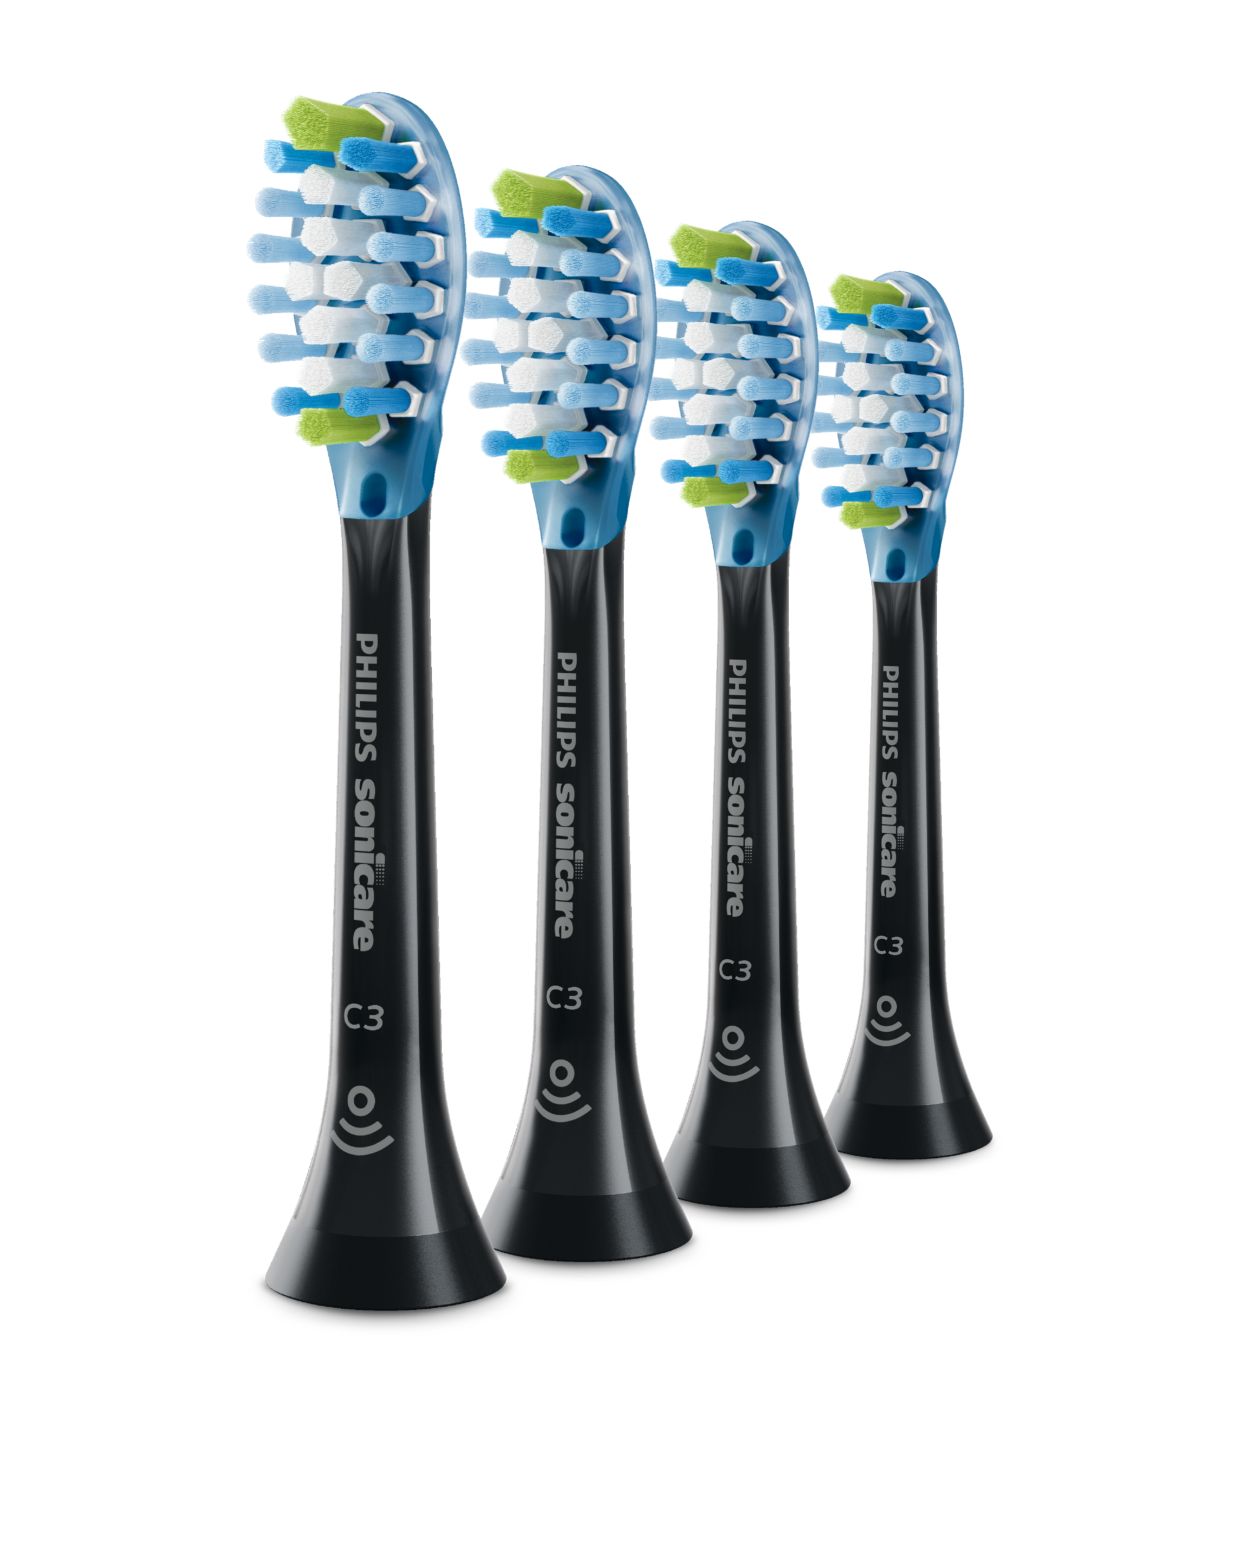 Activeren doolhof kralen C3 Premium Plaque Control Standard sonic toothbrush heads HX9044/95 |  Sonicare